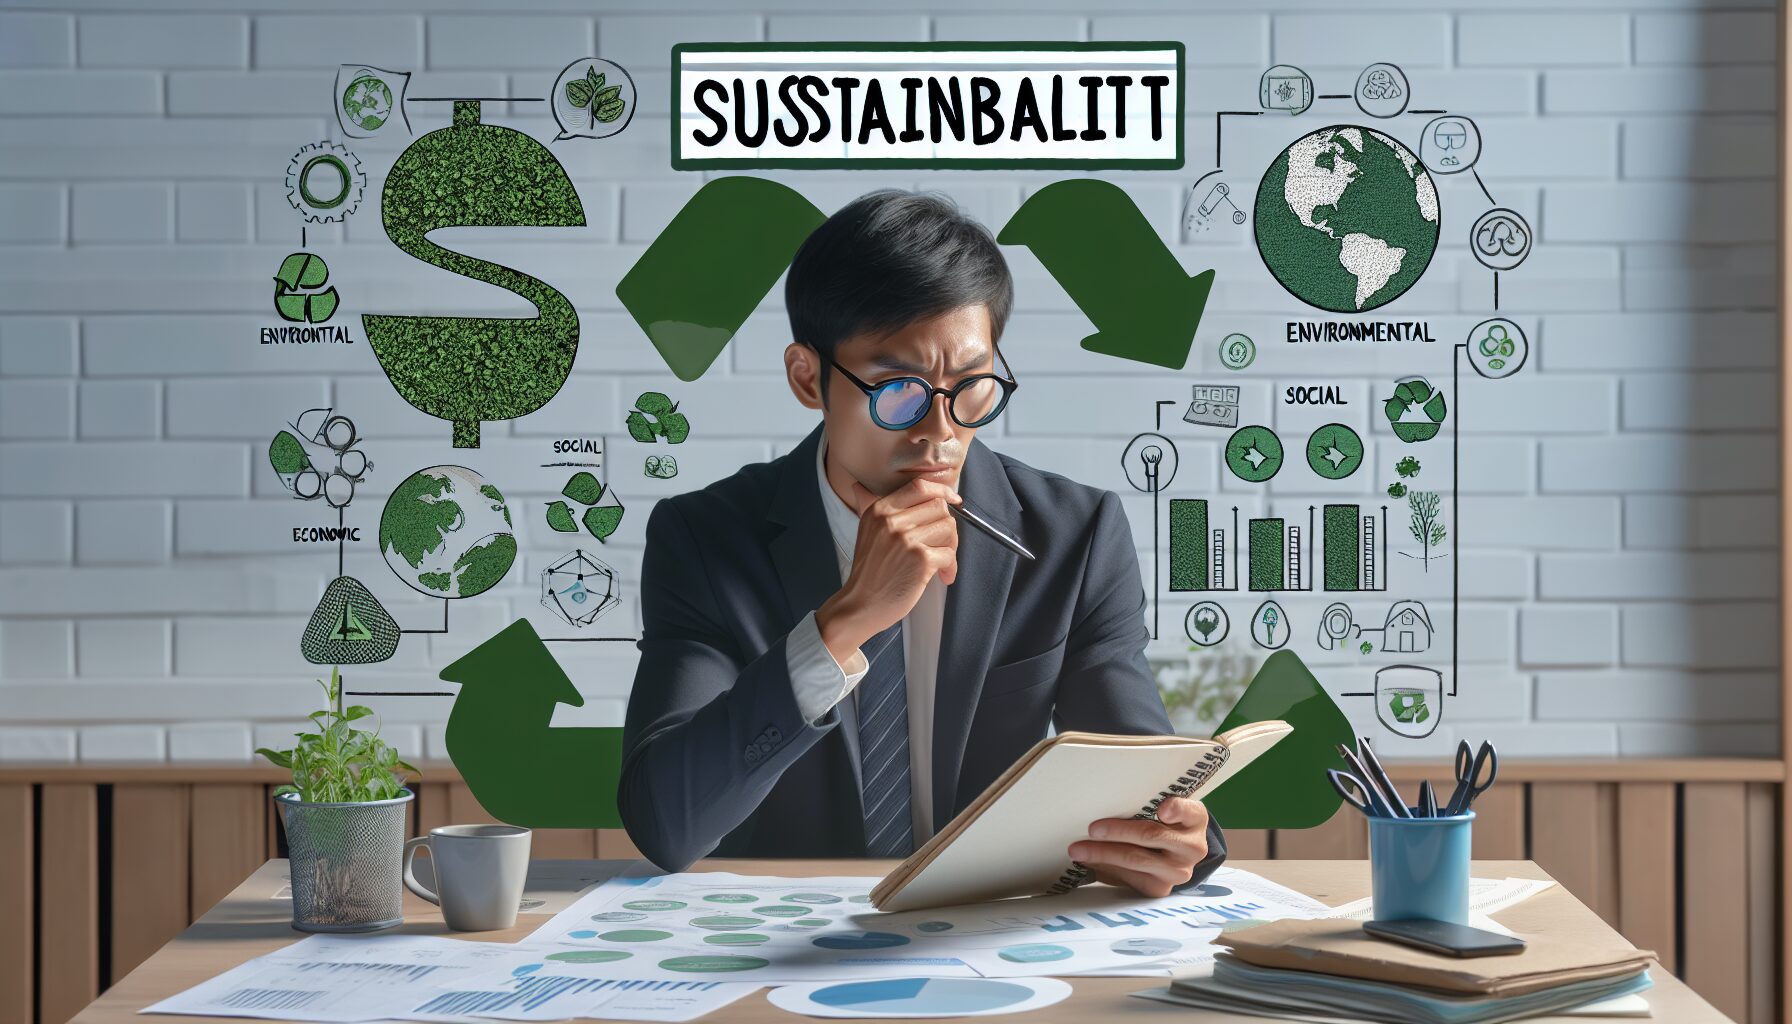 产品管理中的可持续性考虑因素是什么